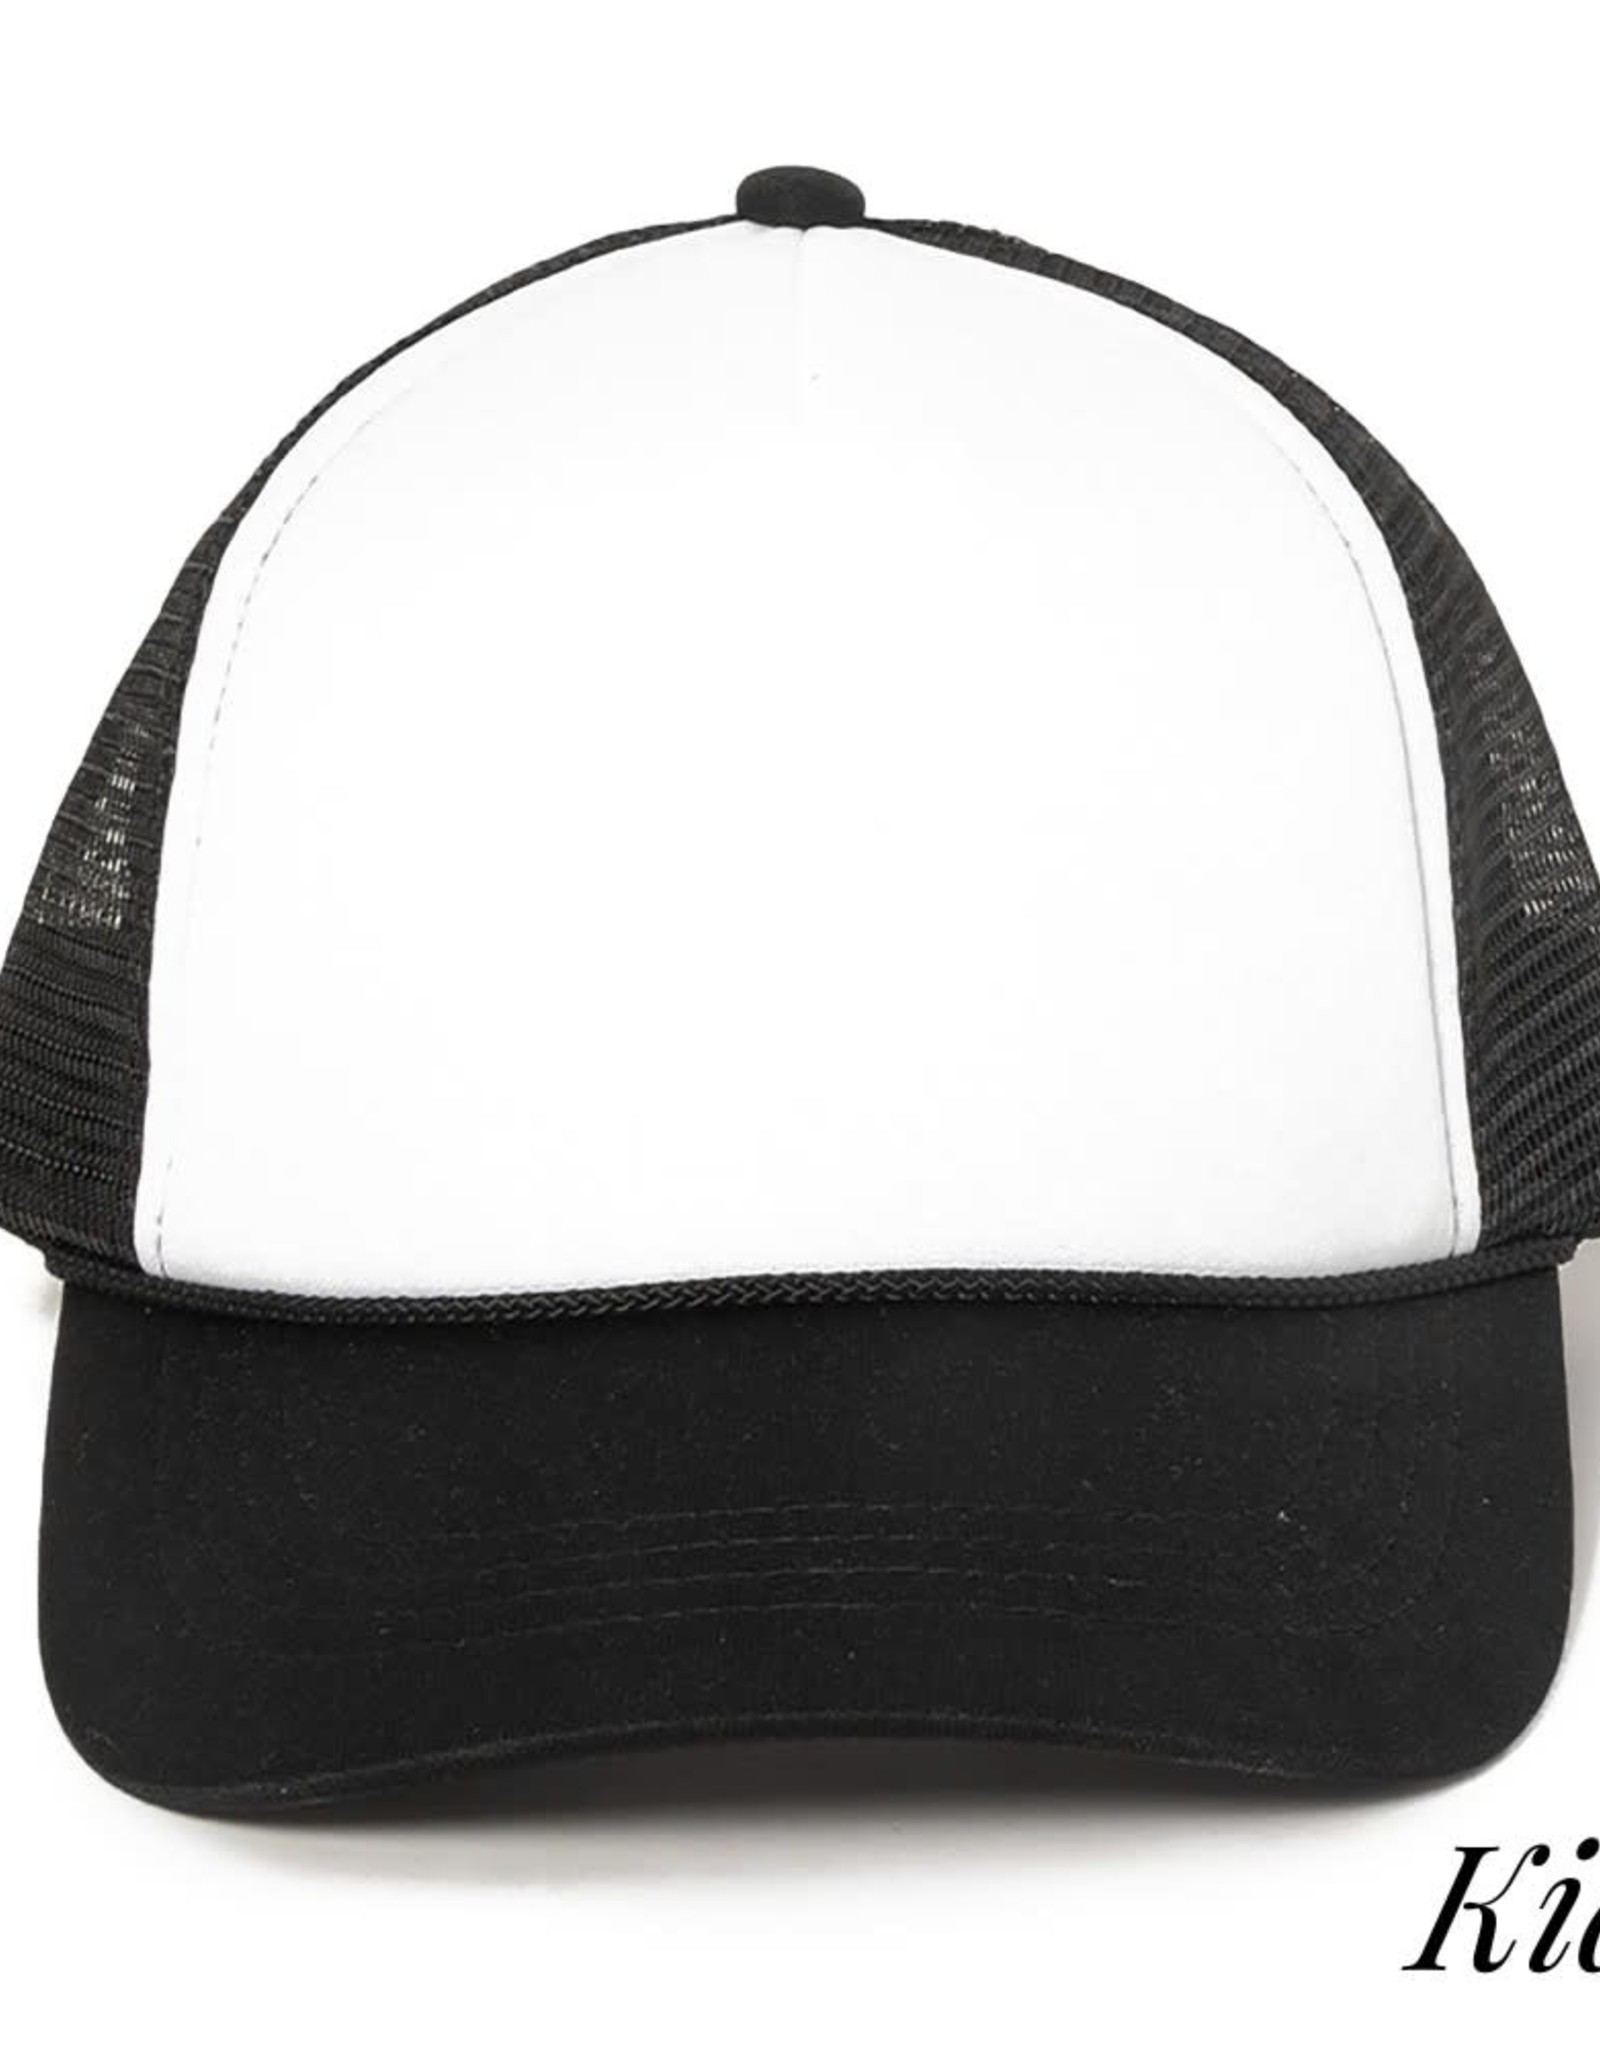 judson 729347 - Kids Solid Color Mesh Trucker Hat - Black